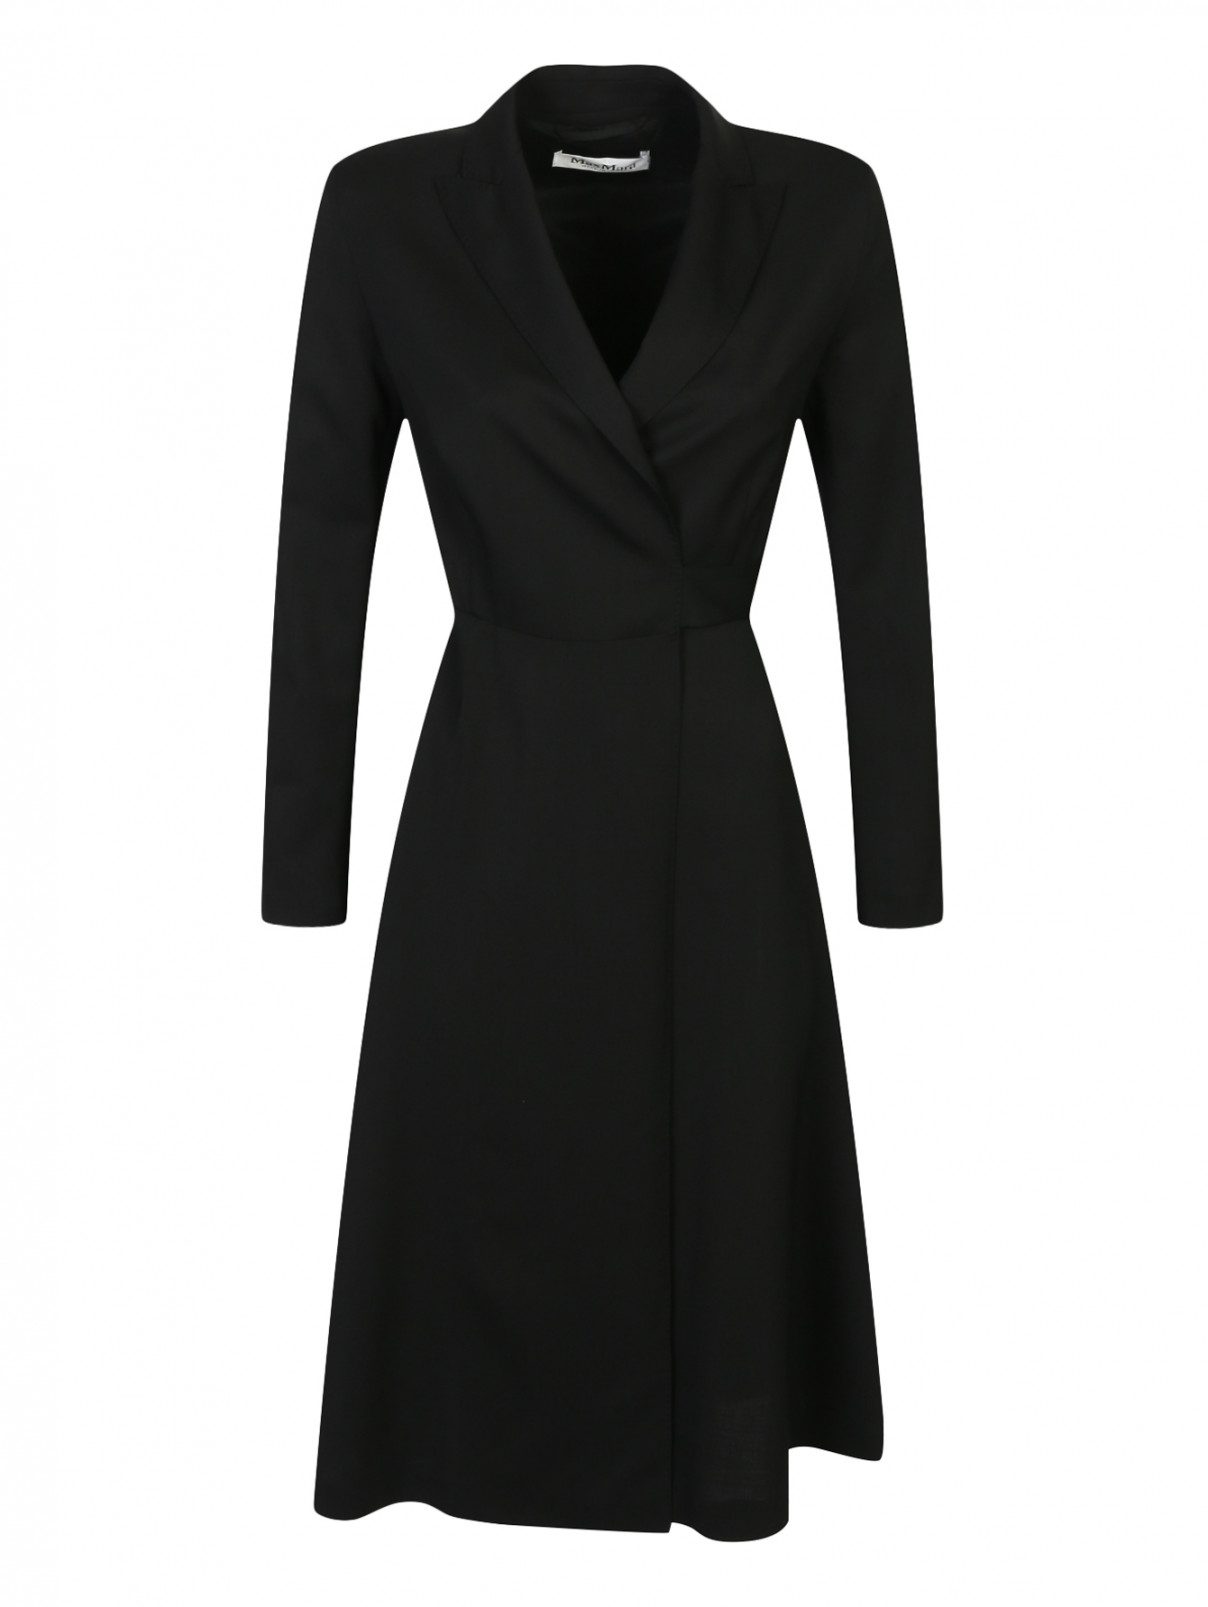 Платье из шерсти с запахом Max Mara  –  Общий вид  – Цвет:  Черный